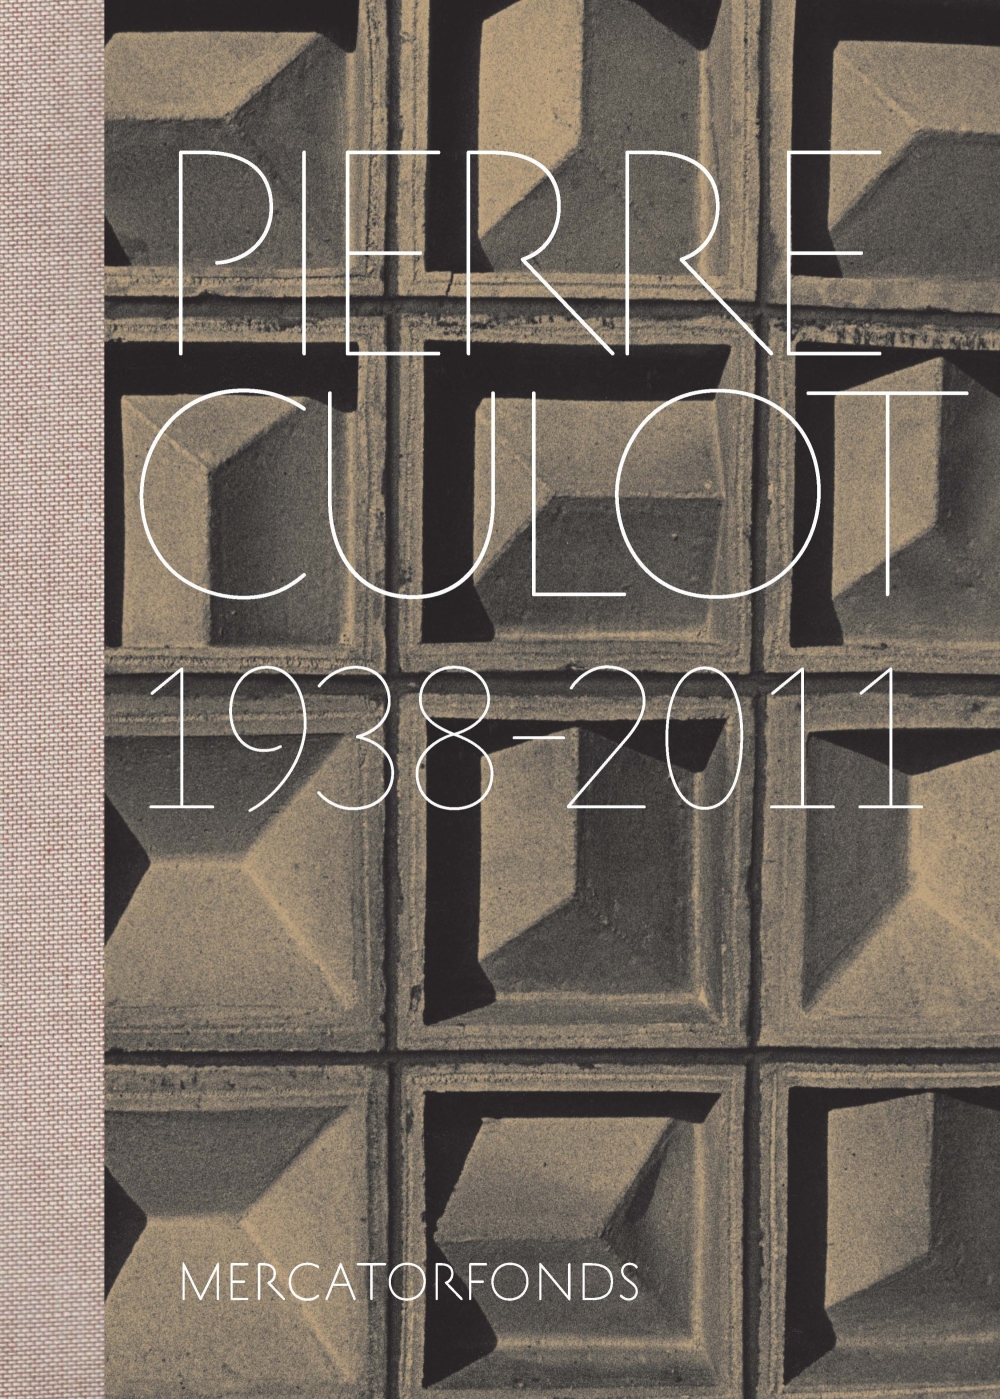 Pierre Culot. 1938 - 2011